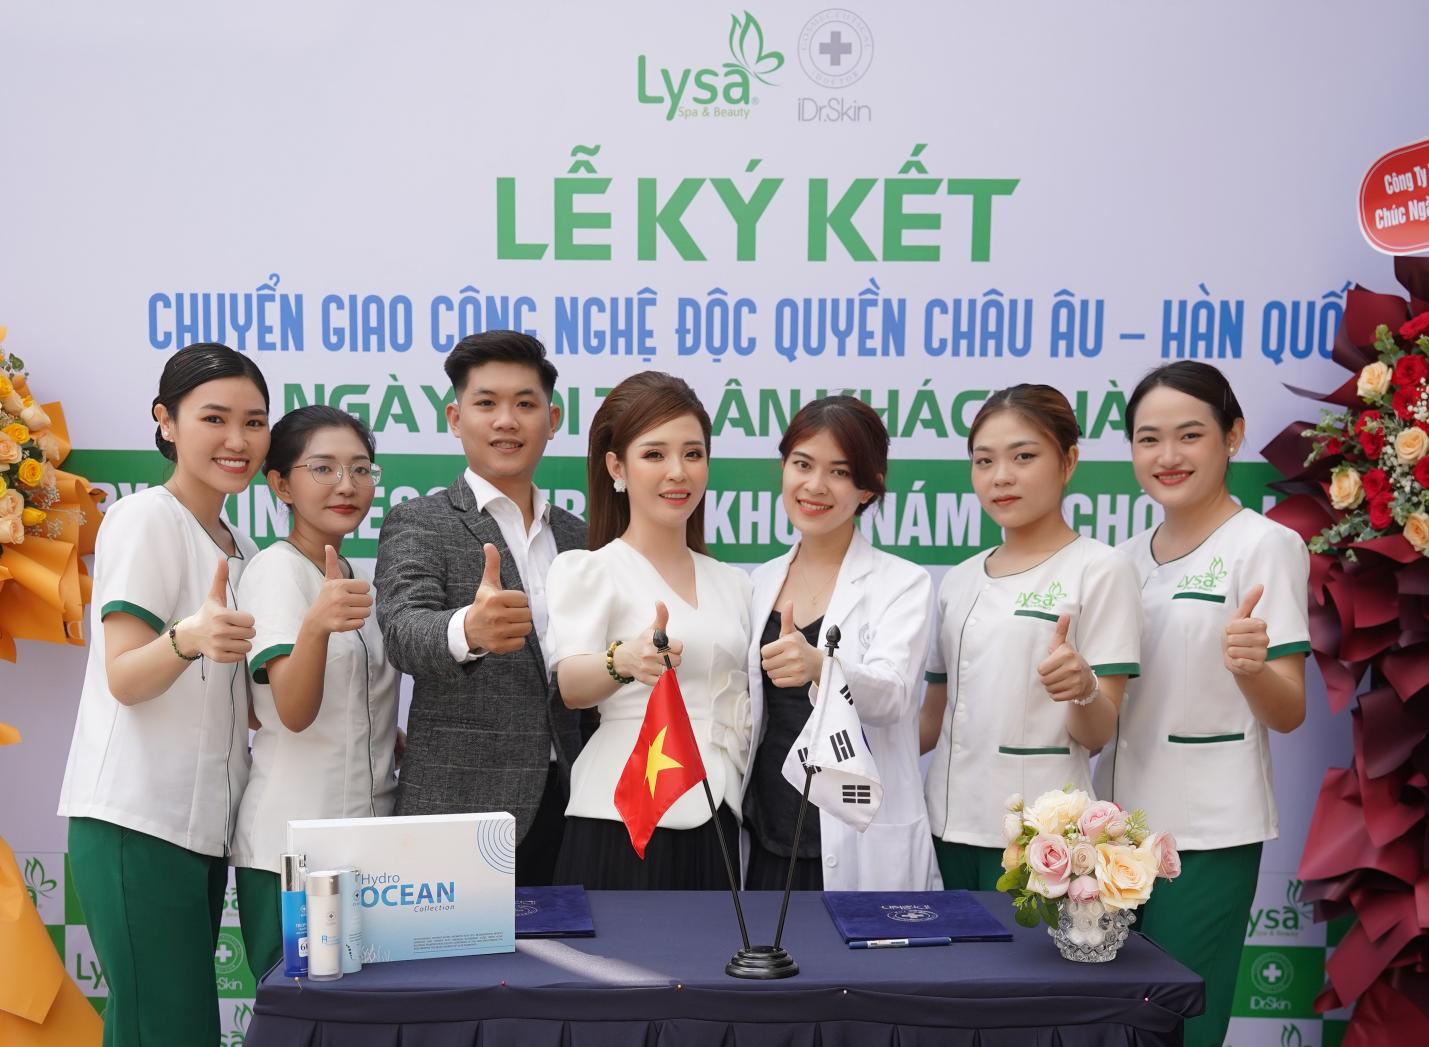 CEO Trần Thị Kim Lụa - Chân dung nữ doanh nhân 9X đam mê với ngành làm đẹp - 3